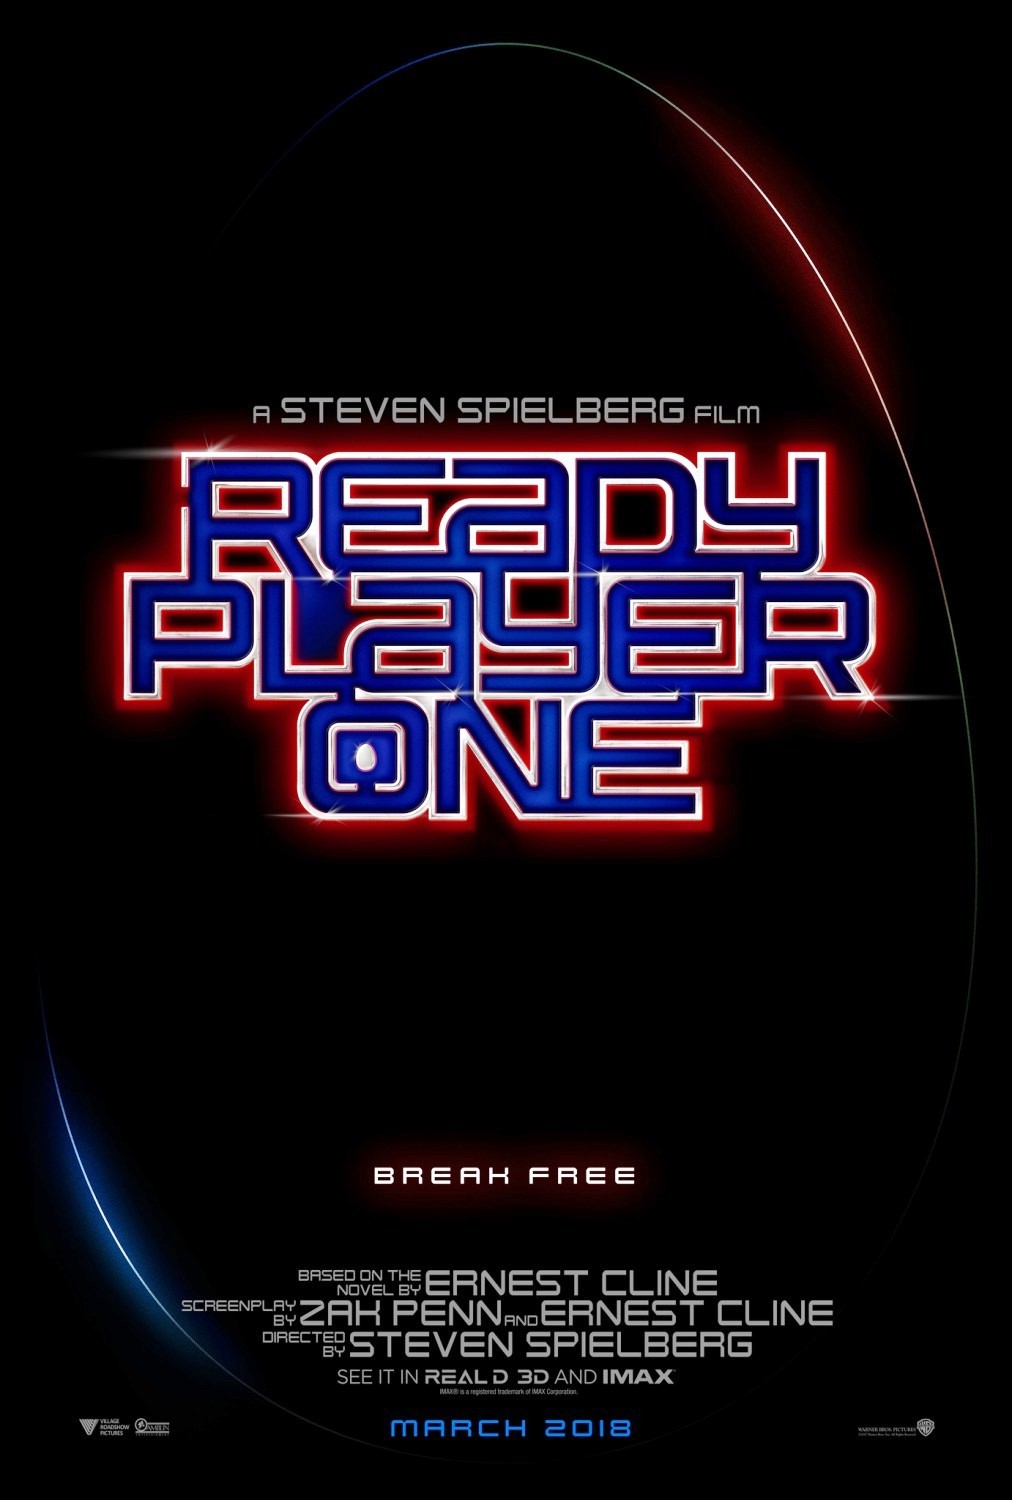 player-one-trailer-e-poster-dal-comic-con-2017-1.jpg